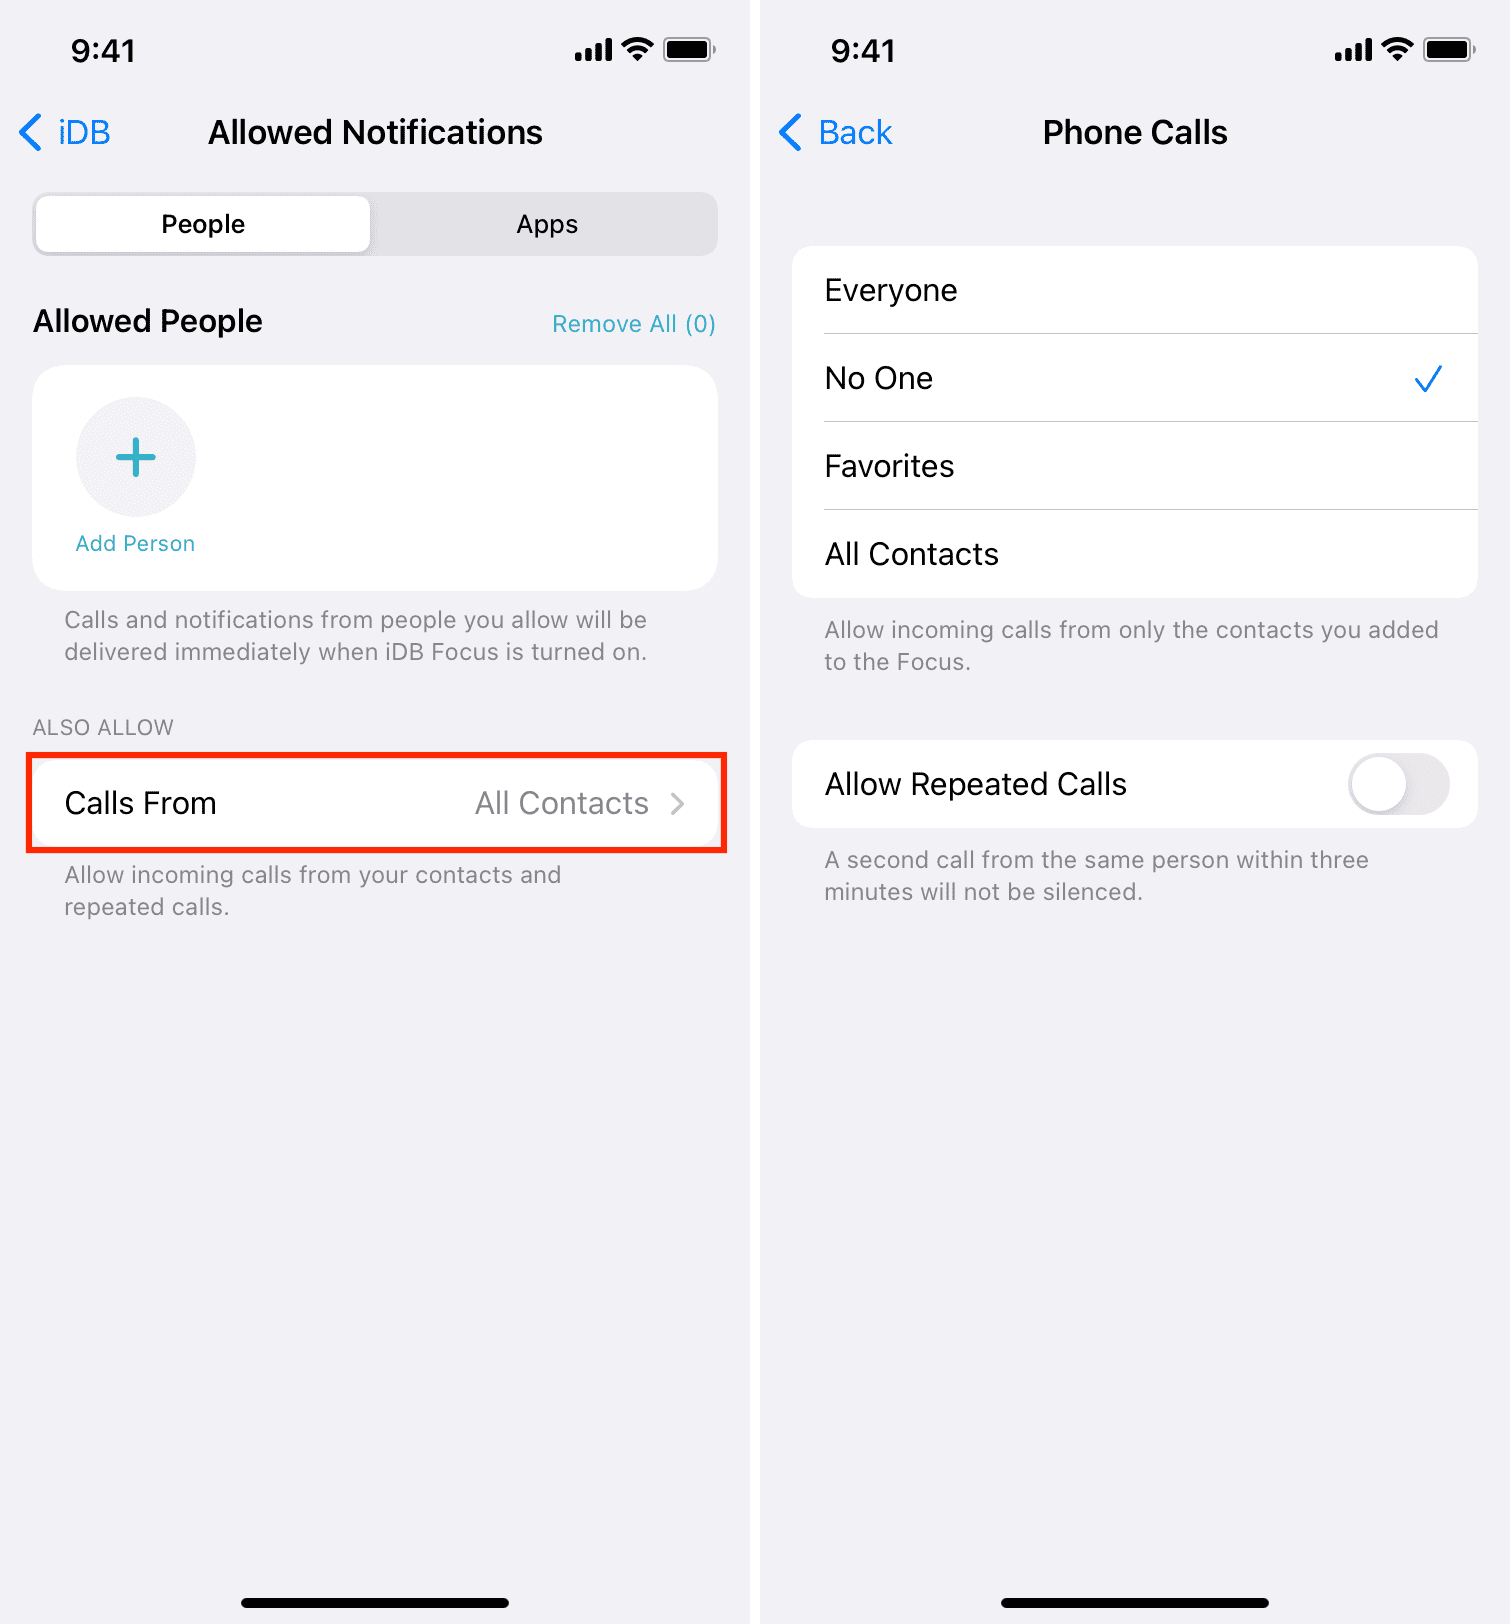 Phone Calls settings in iPhone Focus settings